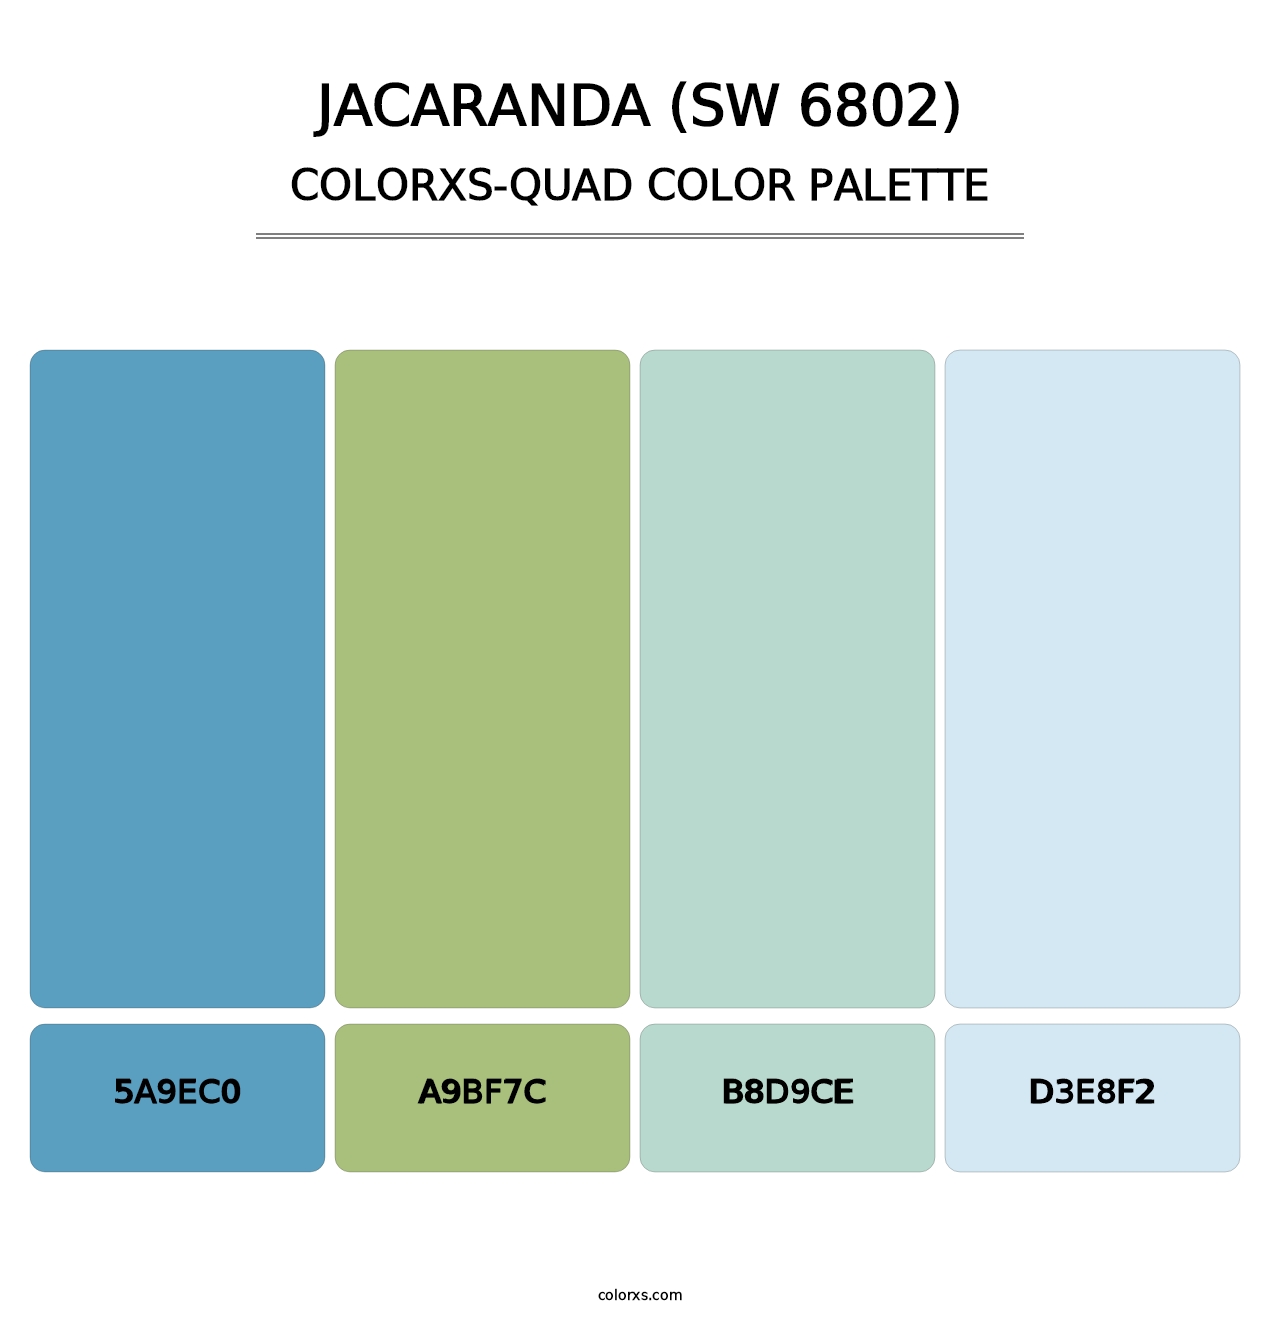 Jacaranda (SW 6802) - Colorxs Quad Palette